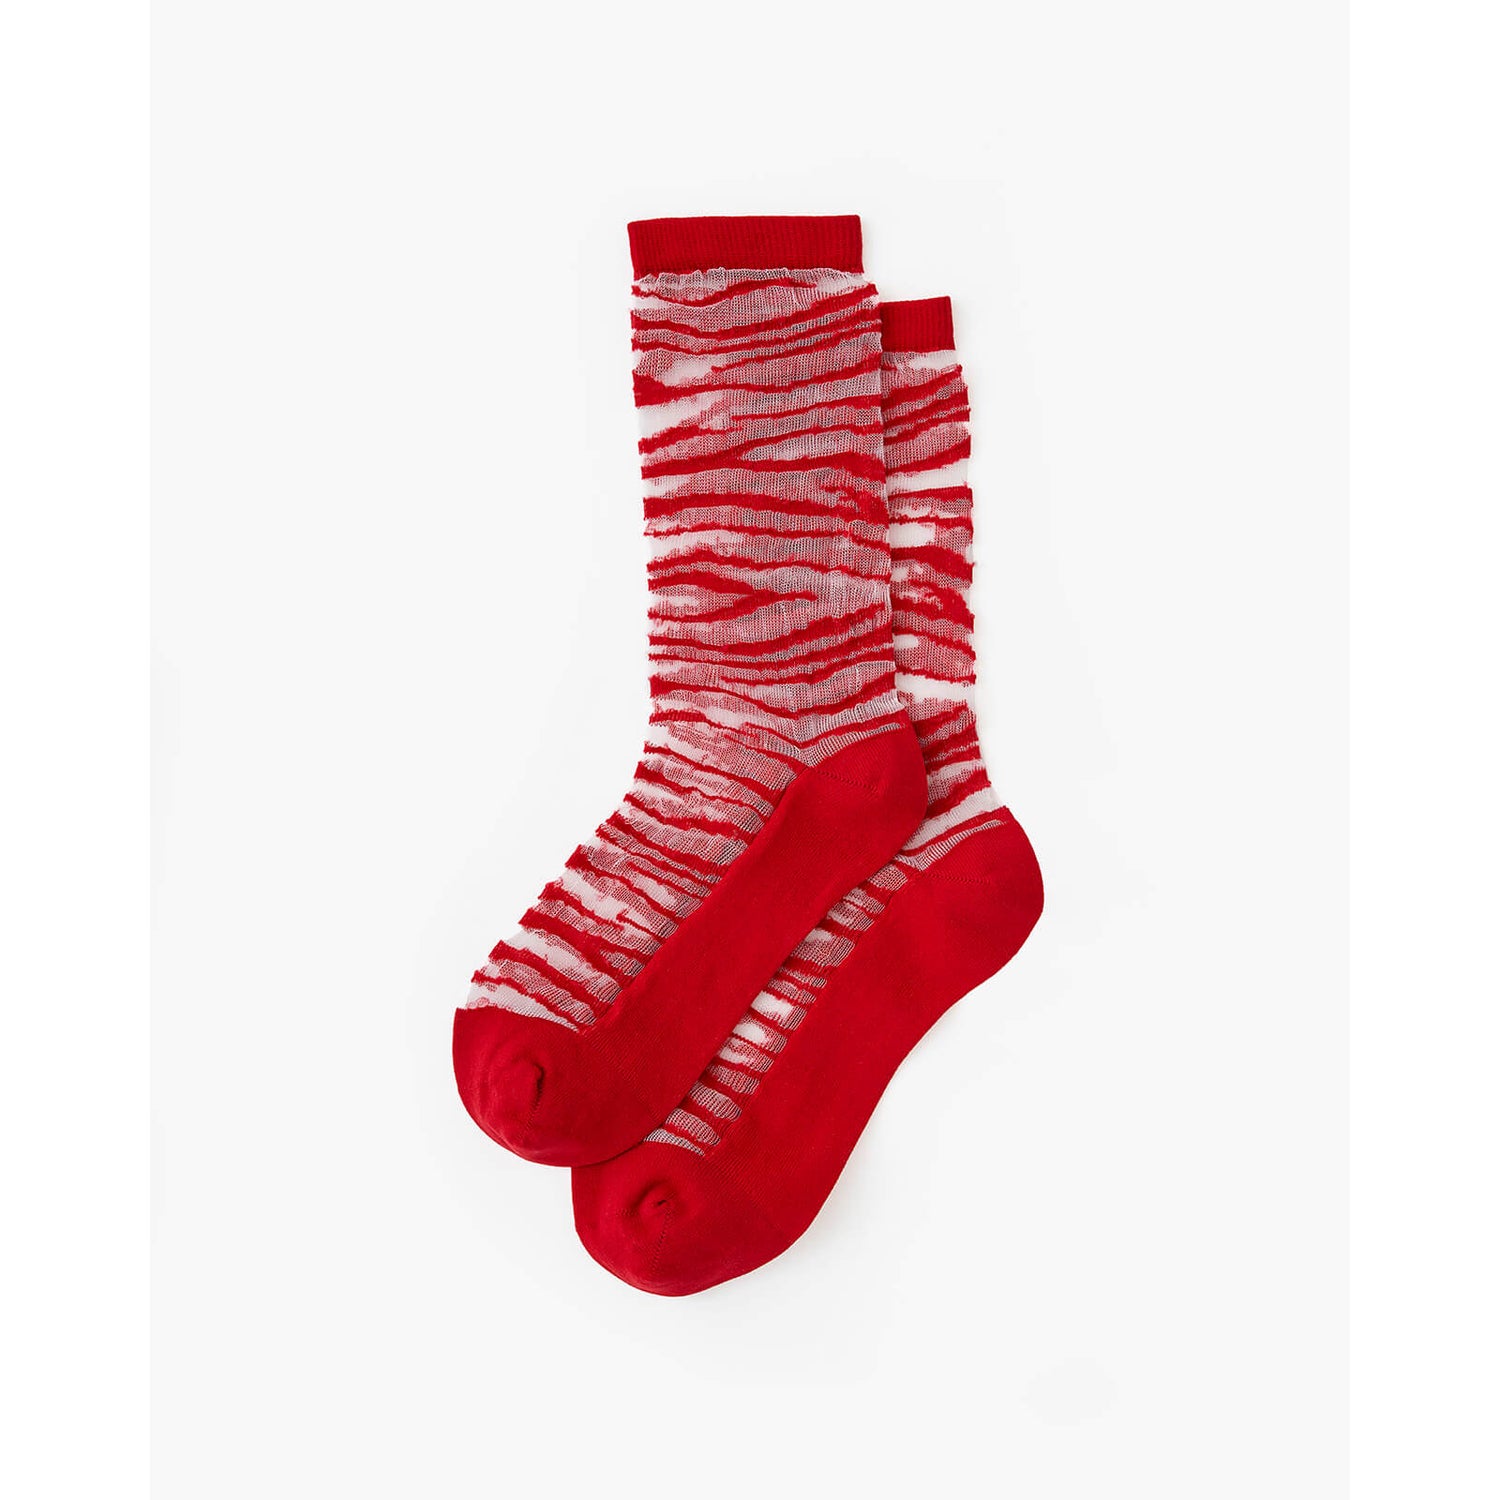 Les Girls Les Boys Static Mesh Socks - Red/White